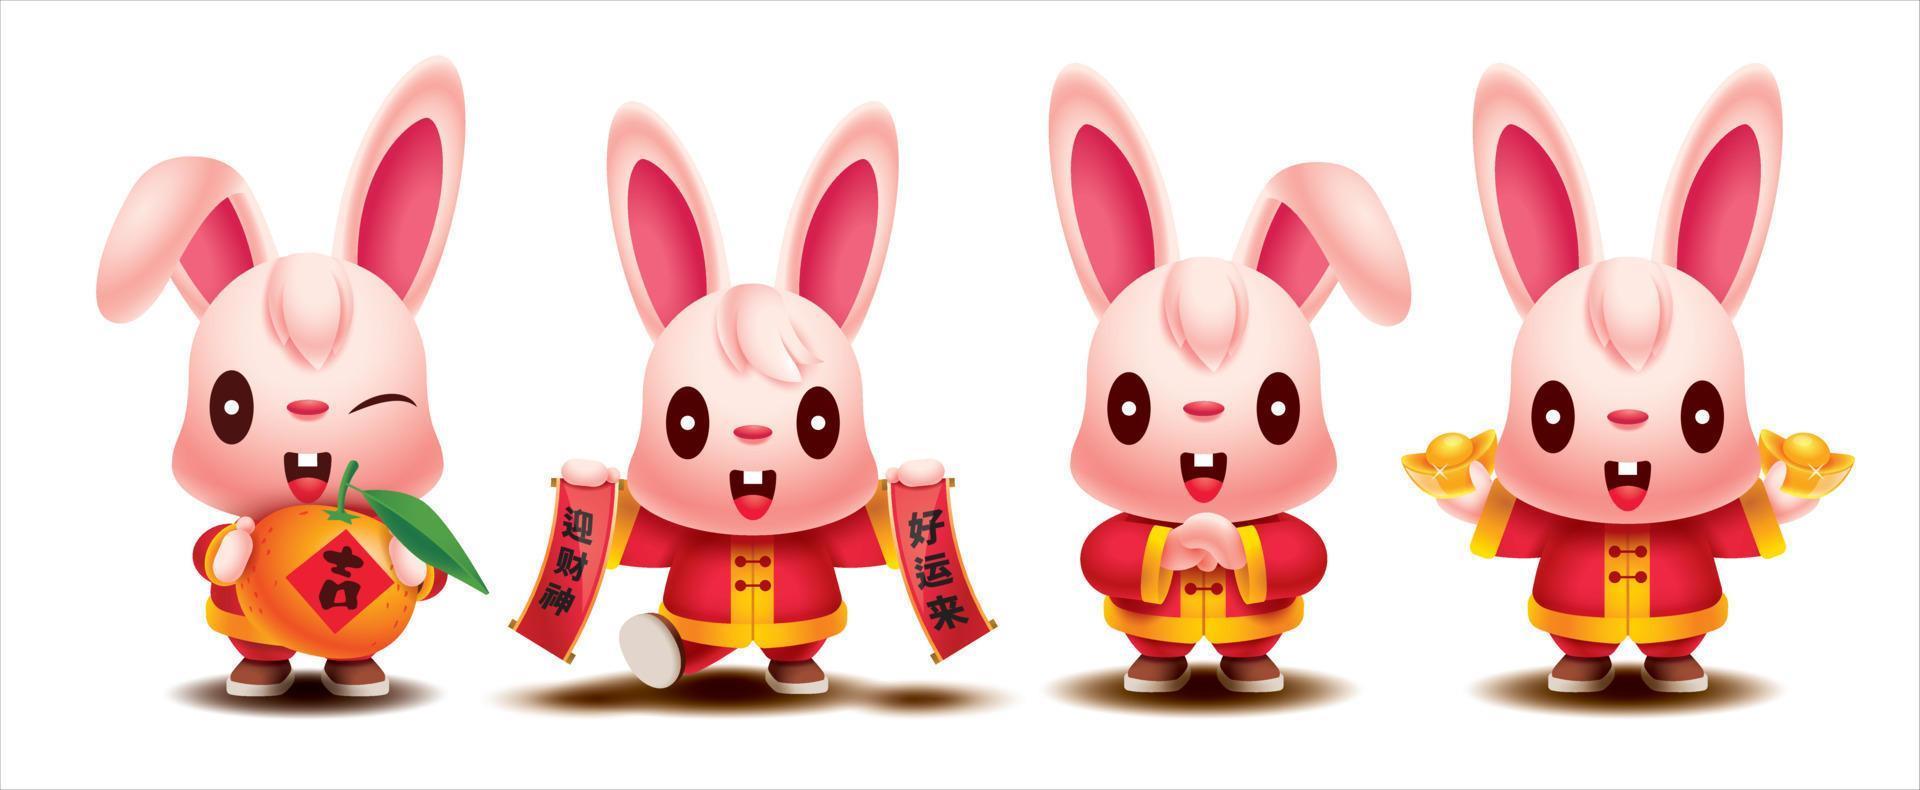 coelho do ano novo chinês 2023 conjunto de coleção de personagem de desenho animado de coelho fofo segurando o elemento festivo ouro, pergaminho chinês e laranja tangerina vetor